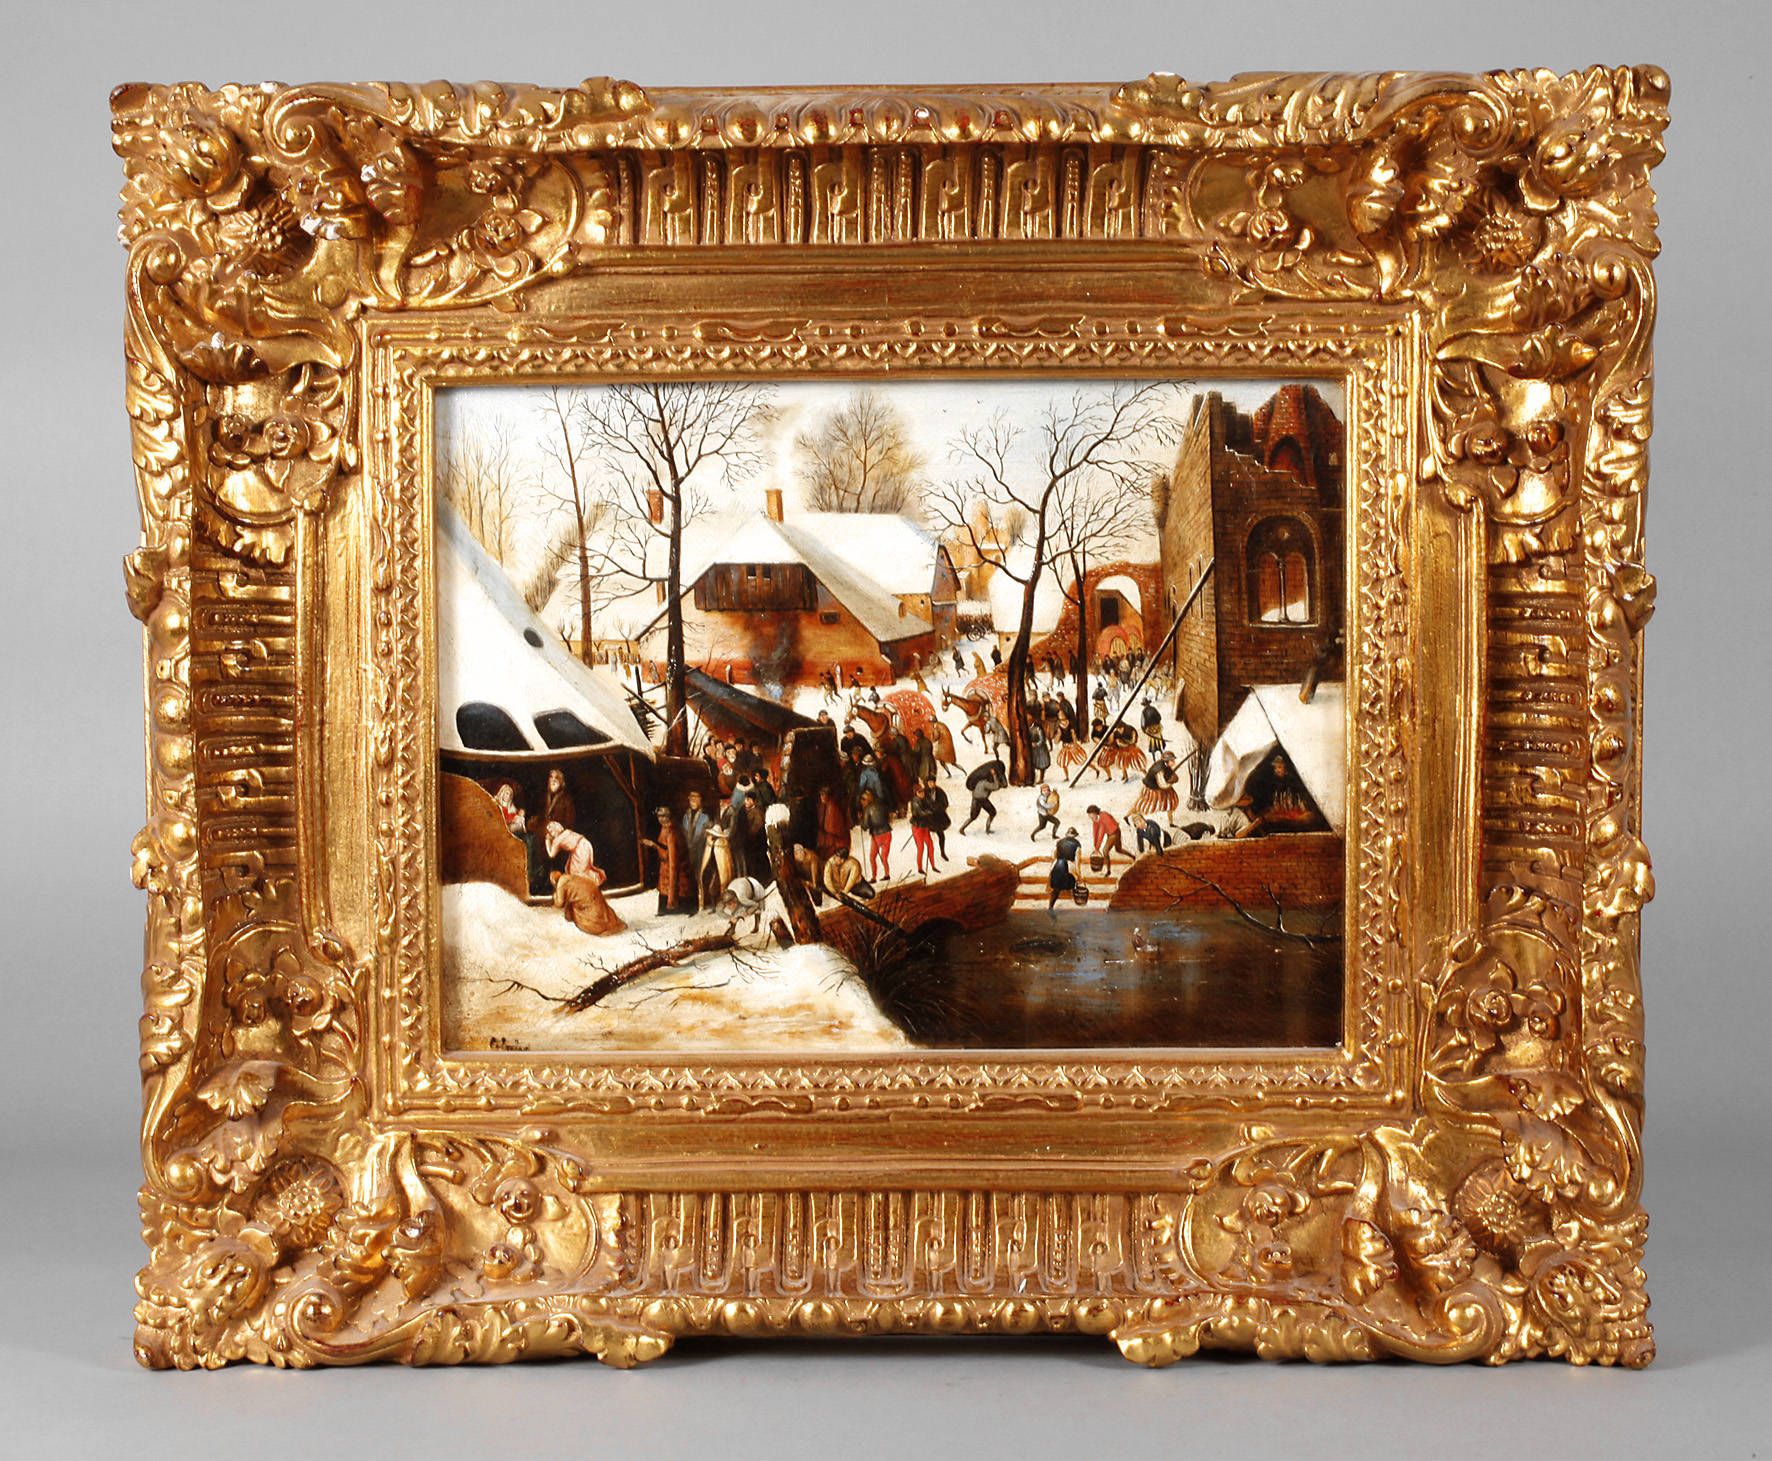 Calzolari, Winterliche Dorfansicht nach Brueghel